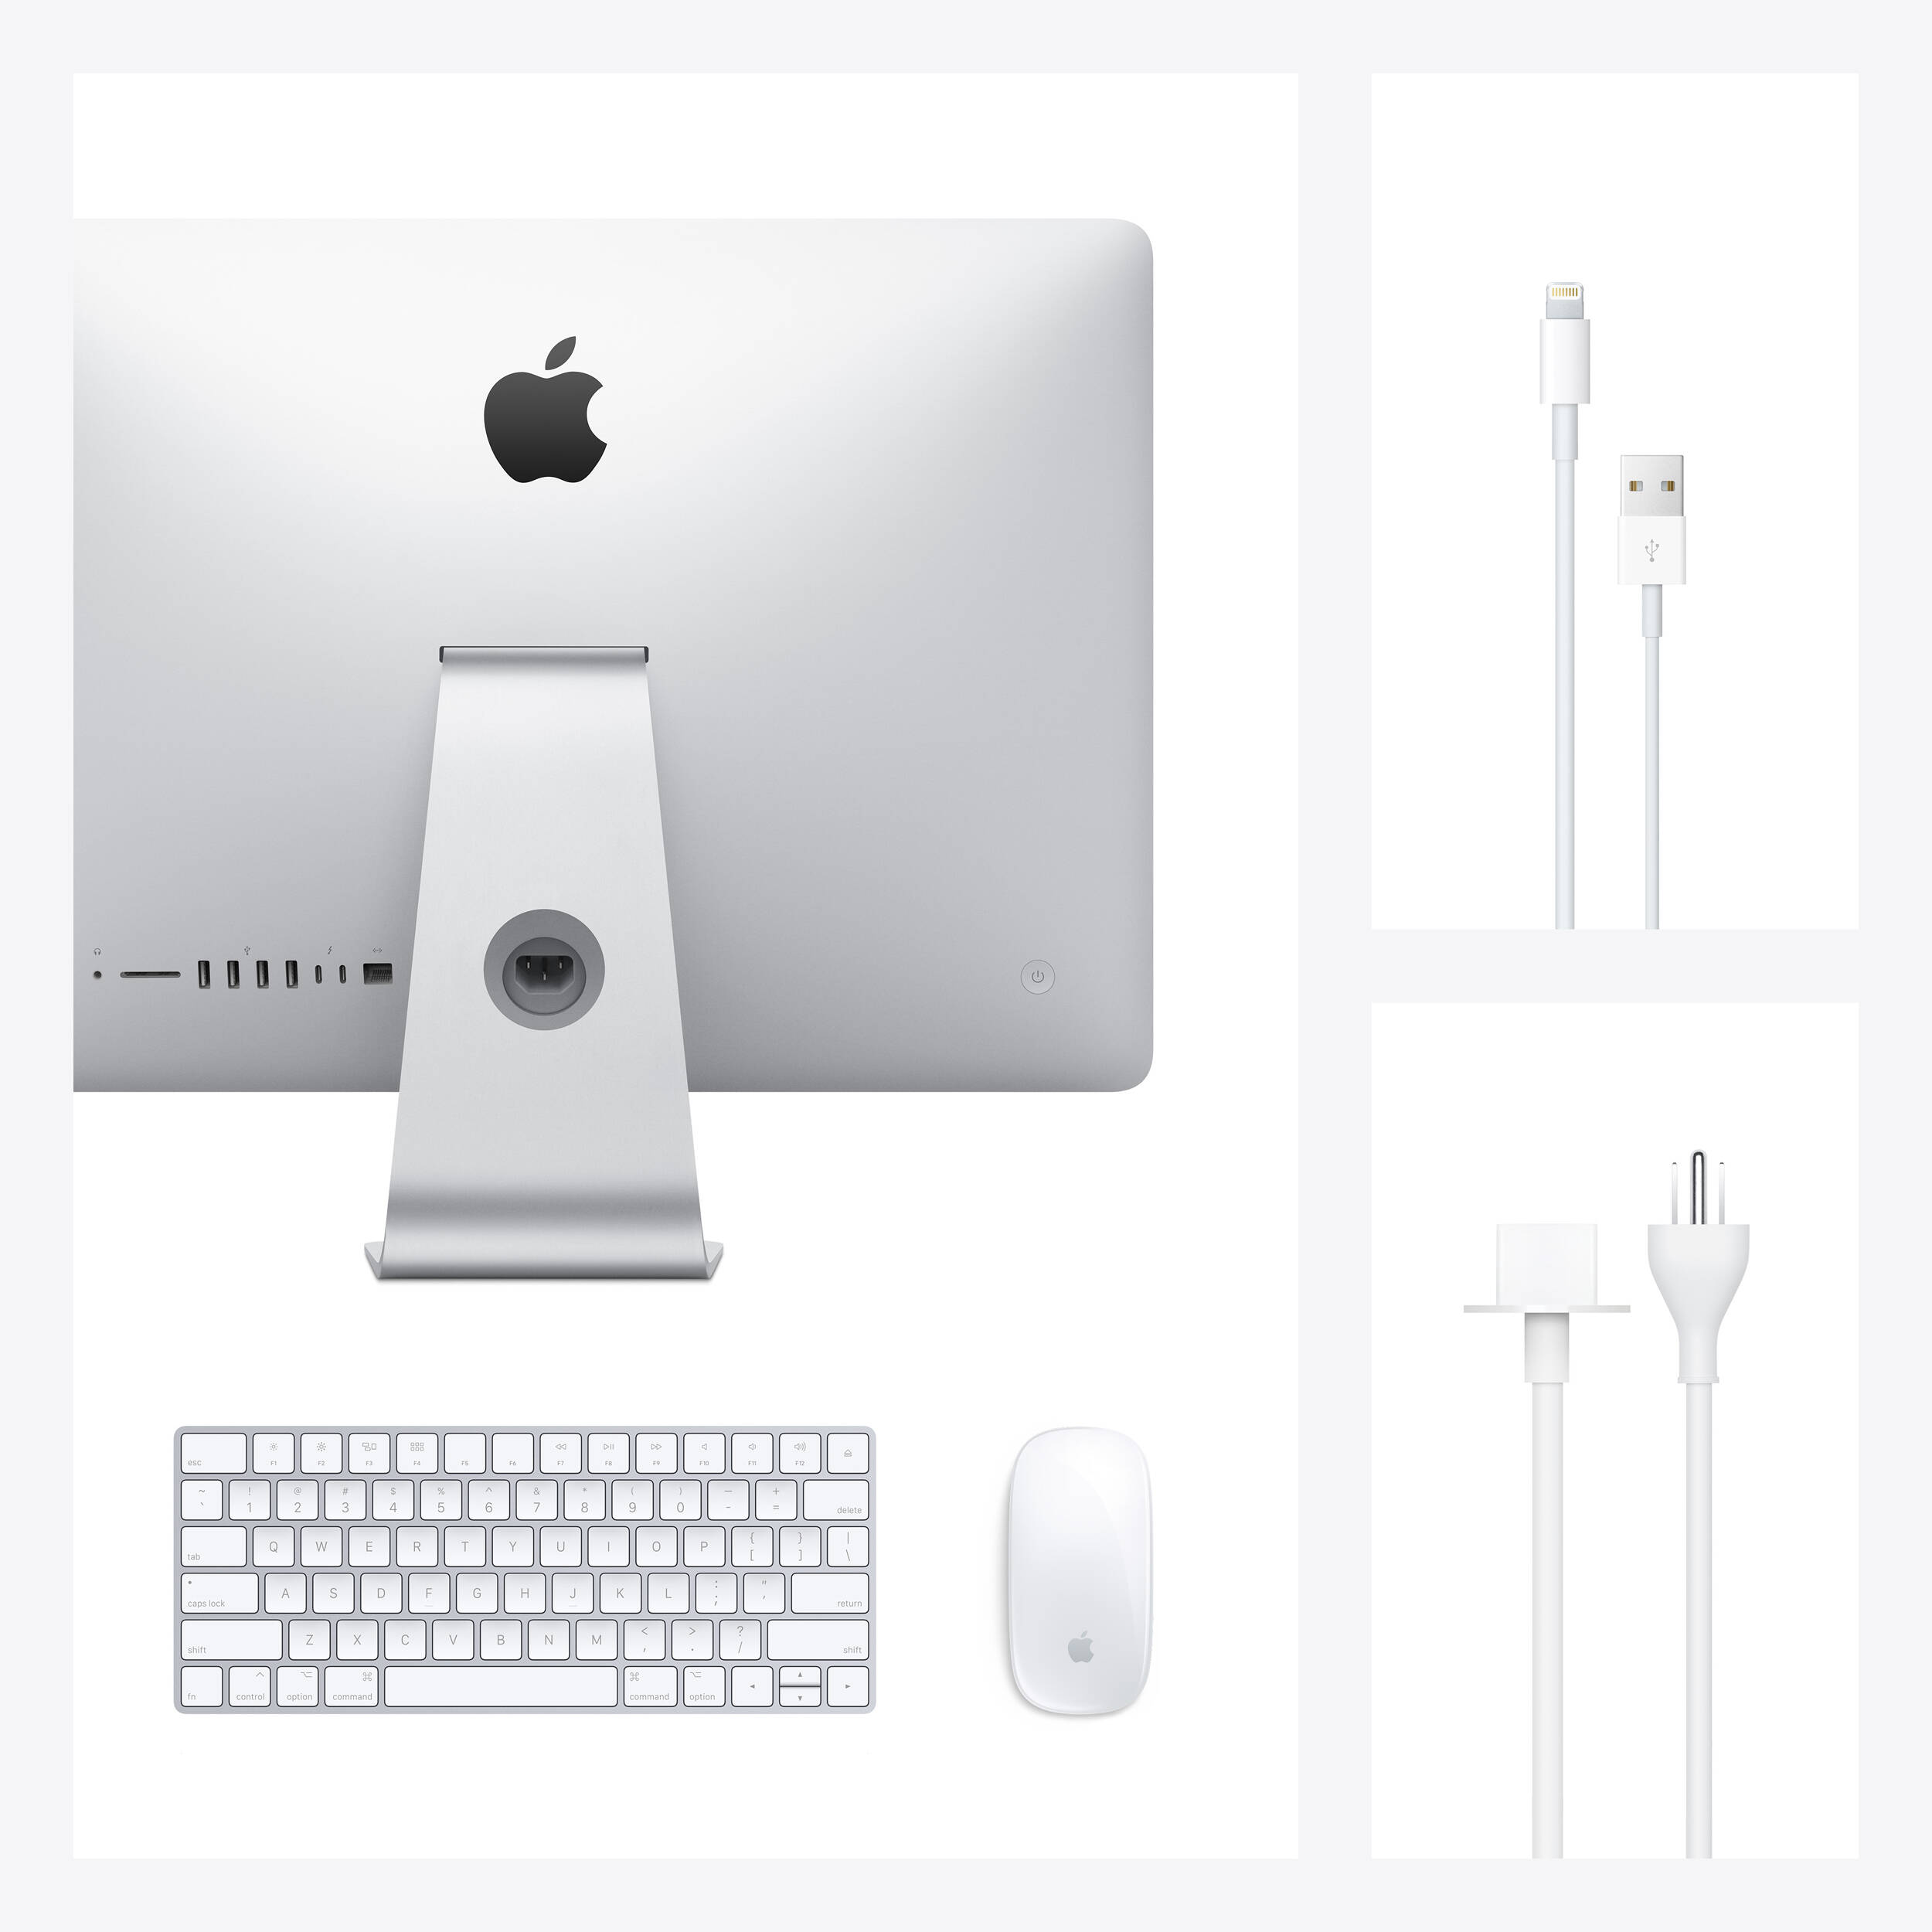 کامپیوتر همه کاره 27 اینچی اپل مدل iMac MXWU2 2020 با صفحه نمایش رتینا 5K